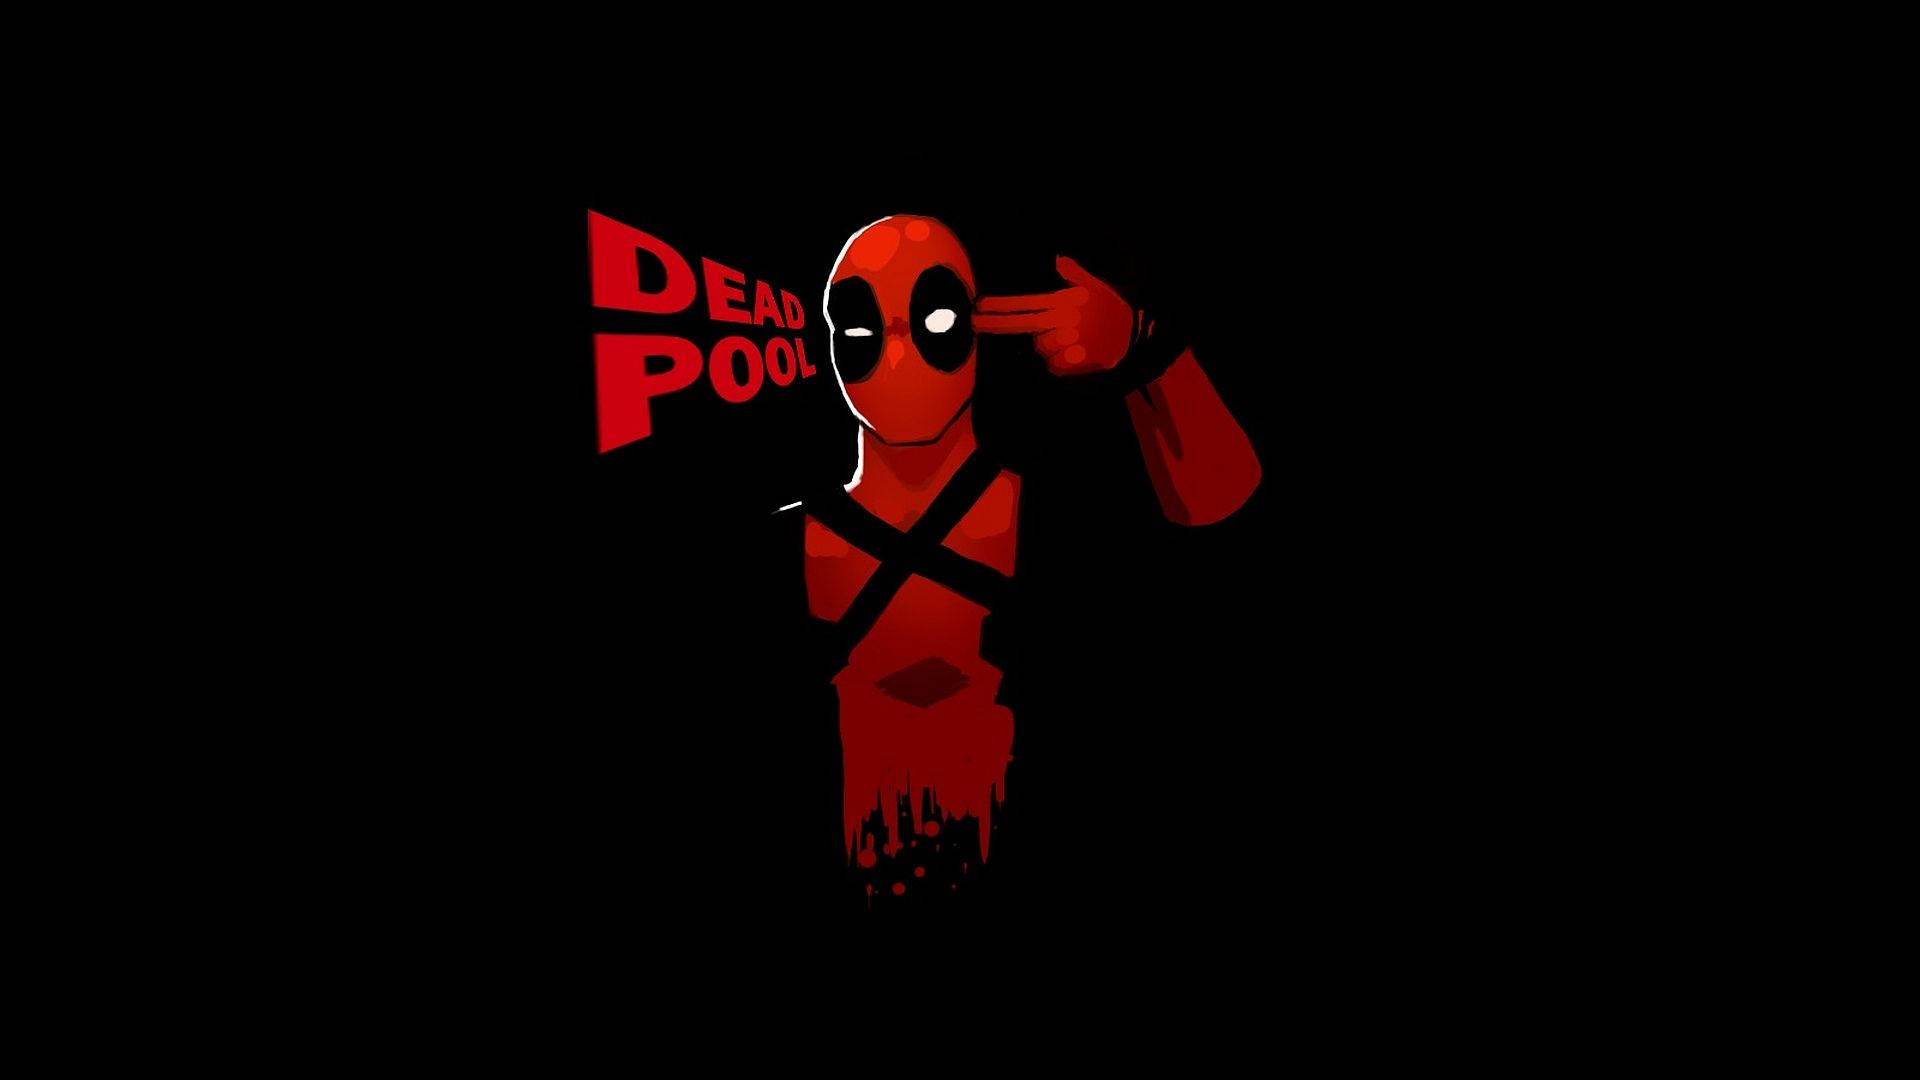 Deadpool Gun Hands Background